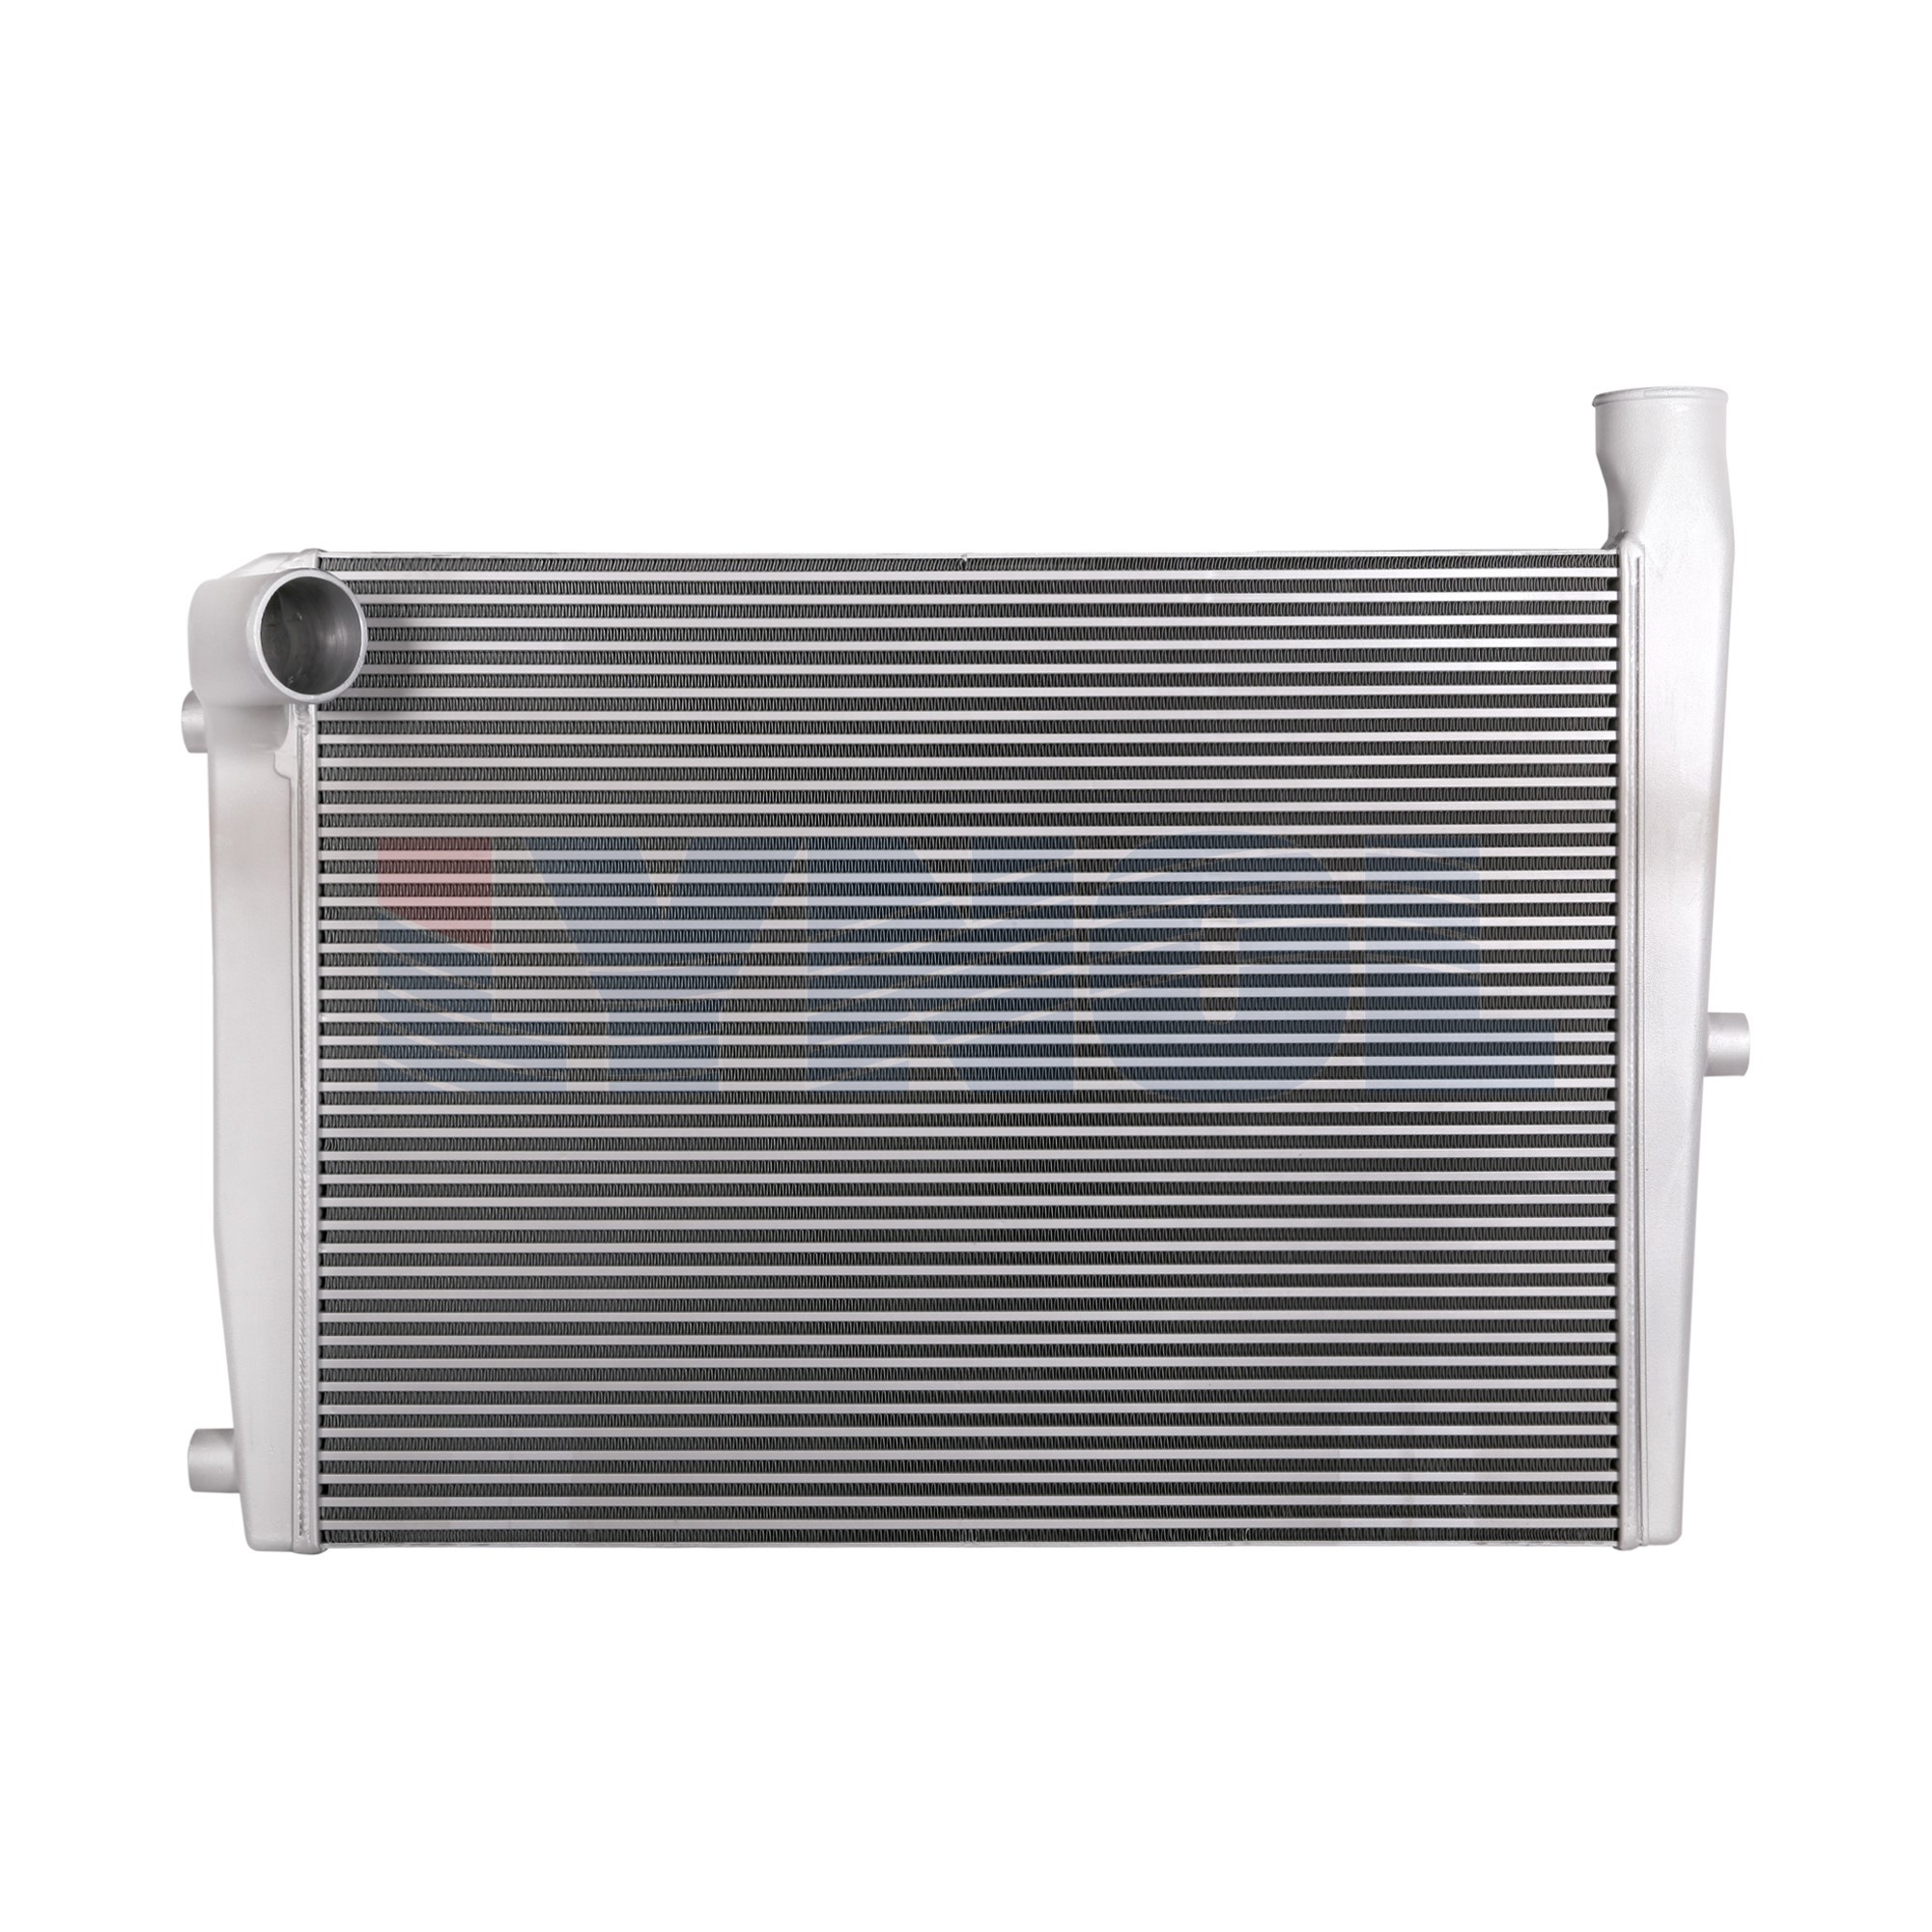 2419-001 - Van Hool Charge Air Cooler